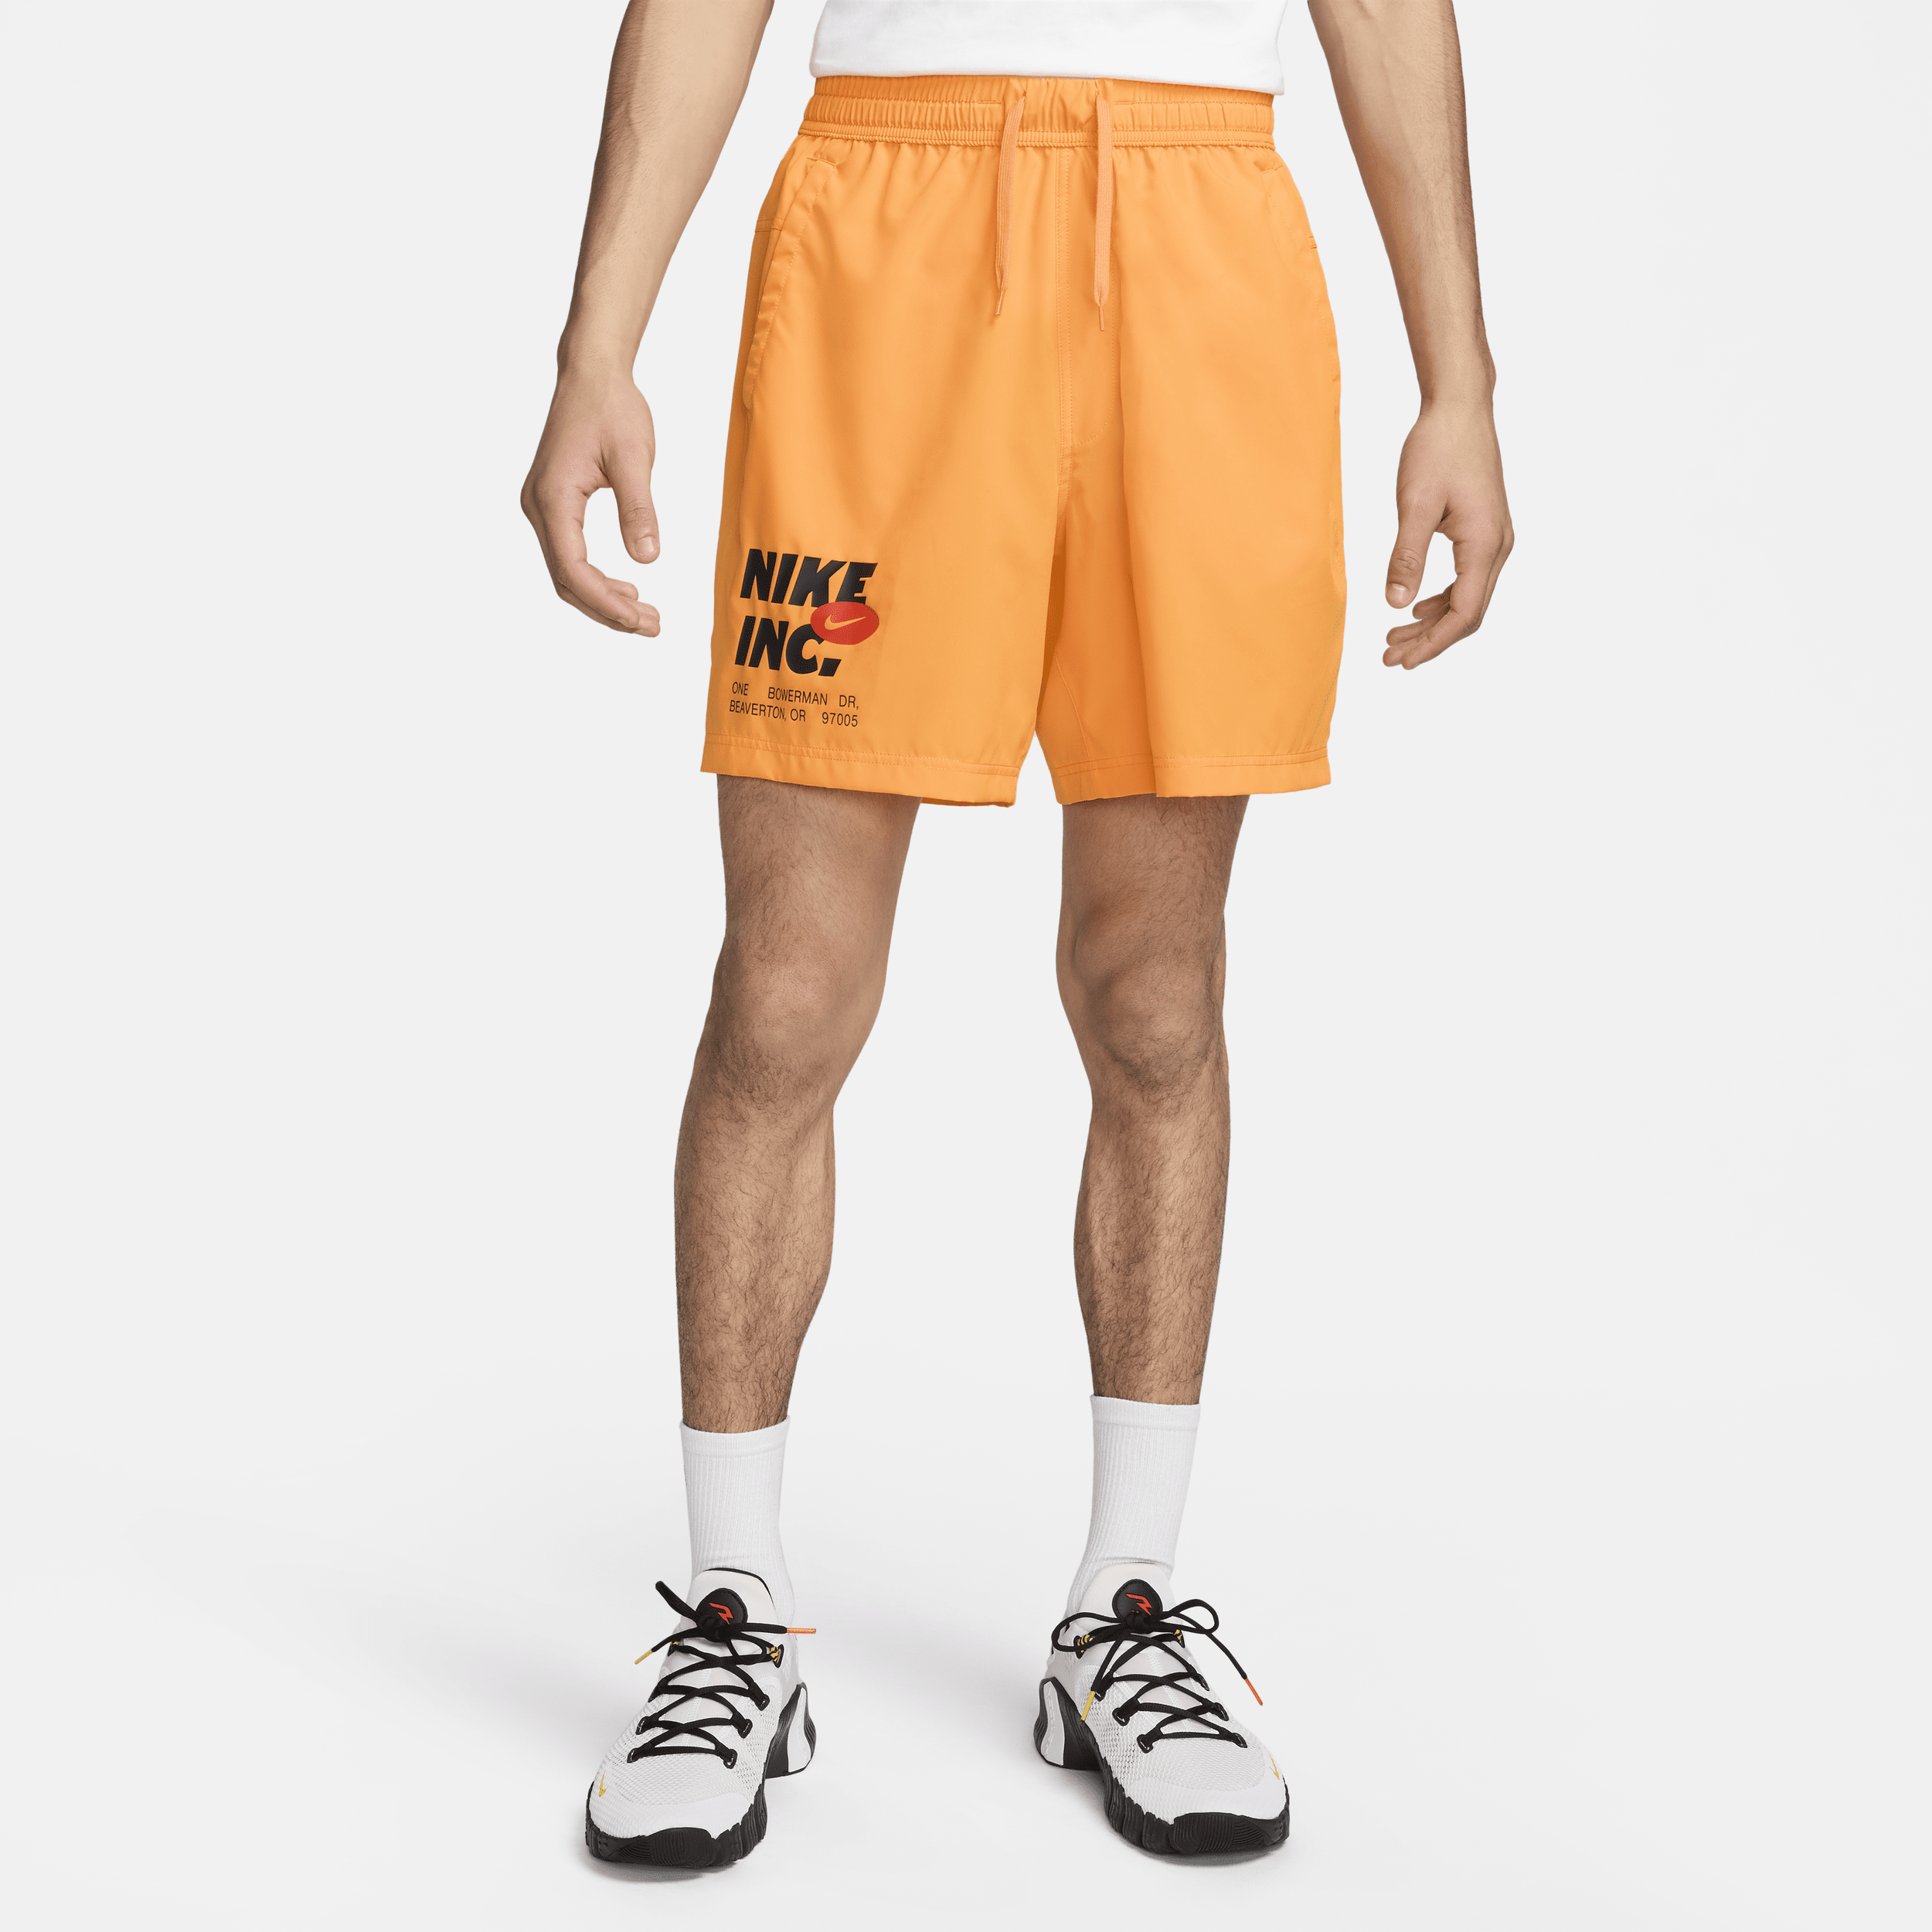 Nike Form Pantalón corto deportivo Dri-FIT de 18 cm sin forro - Hombre - Amarillo